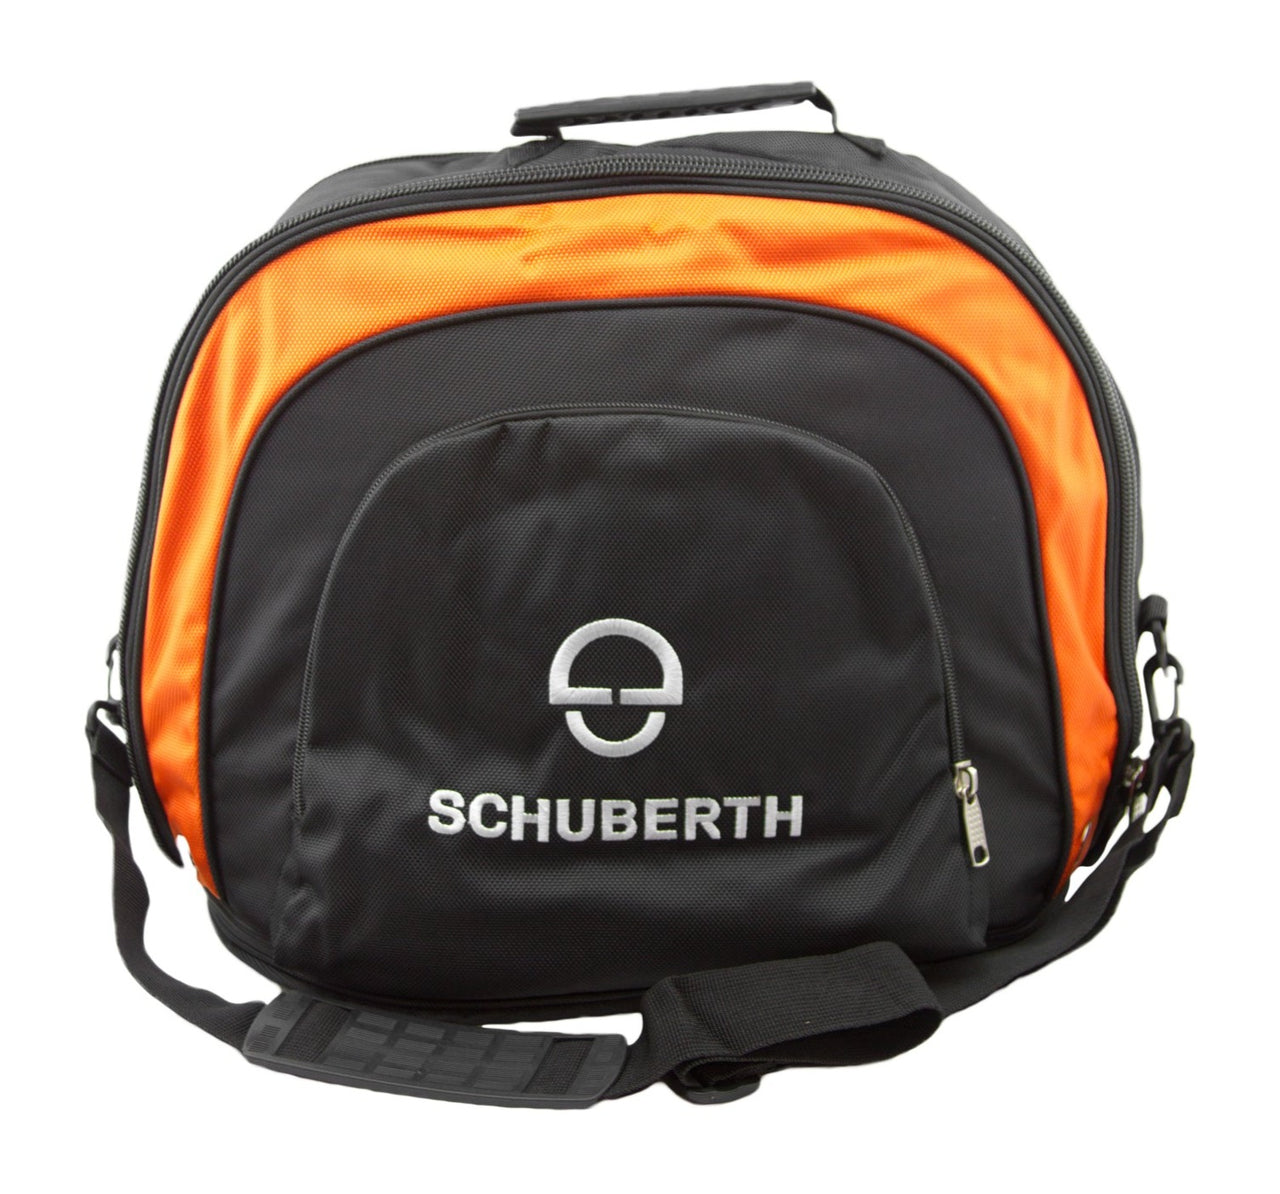 Schuberth Helmet Bag